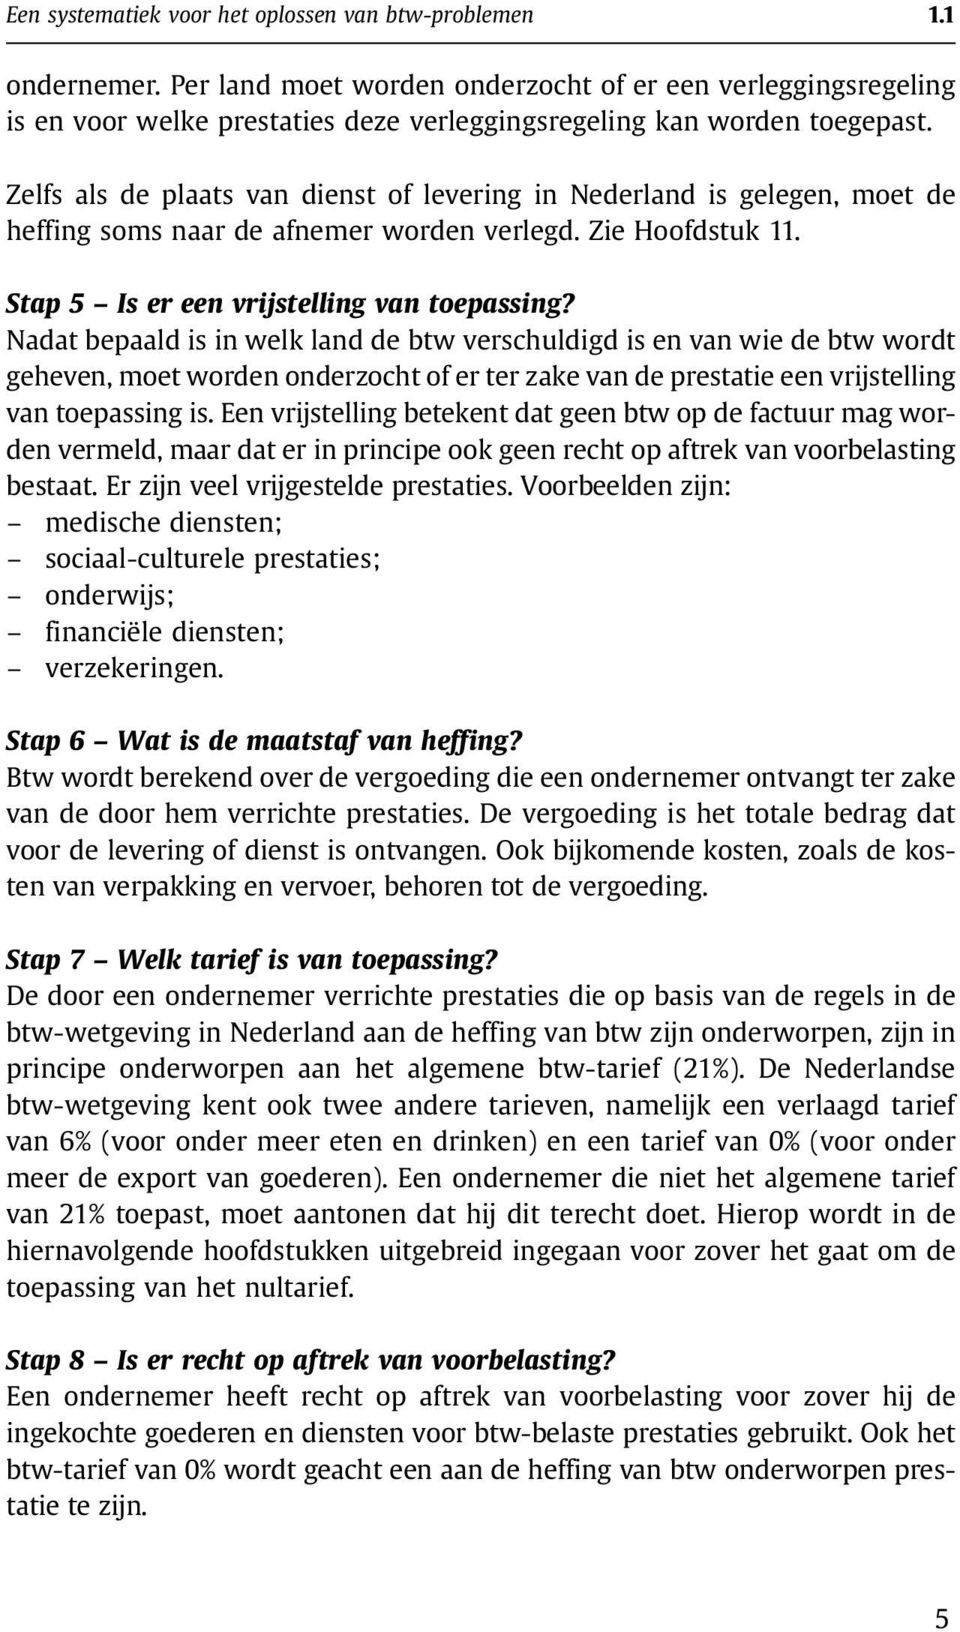 Zelfs als de plaats van dienst of levering in Nederland is gelegen, moet de heffing soms naar de afnemer worden verlegd. Zie Hoofdstuk 11. Stap 5 Is er een vrijstelling van toepassing?